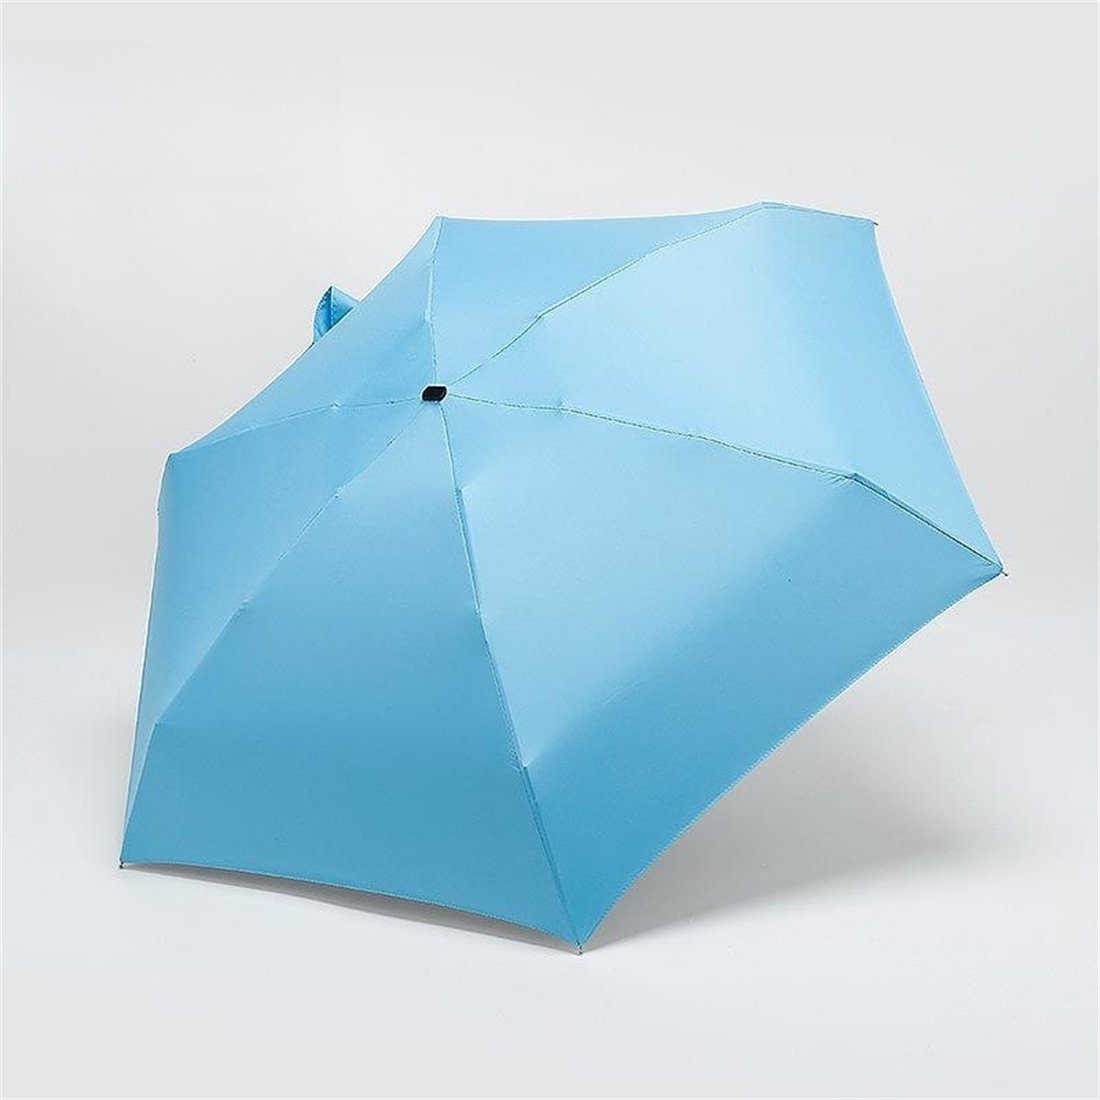 Regen Sonnenschutz, manual für schützt YOOdy~ small unterwegs Taschenregenschirm UV-Schutz und für Sonne sonnenschirm winzig klein damen Blau vor Taschenschirme